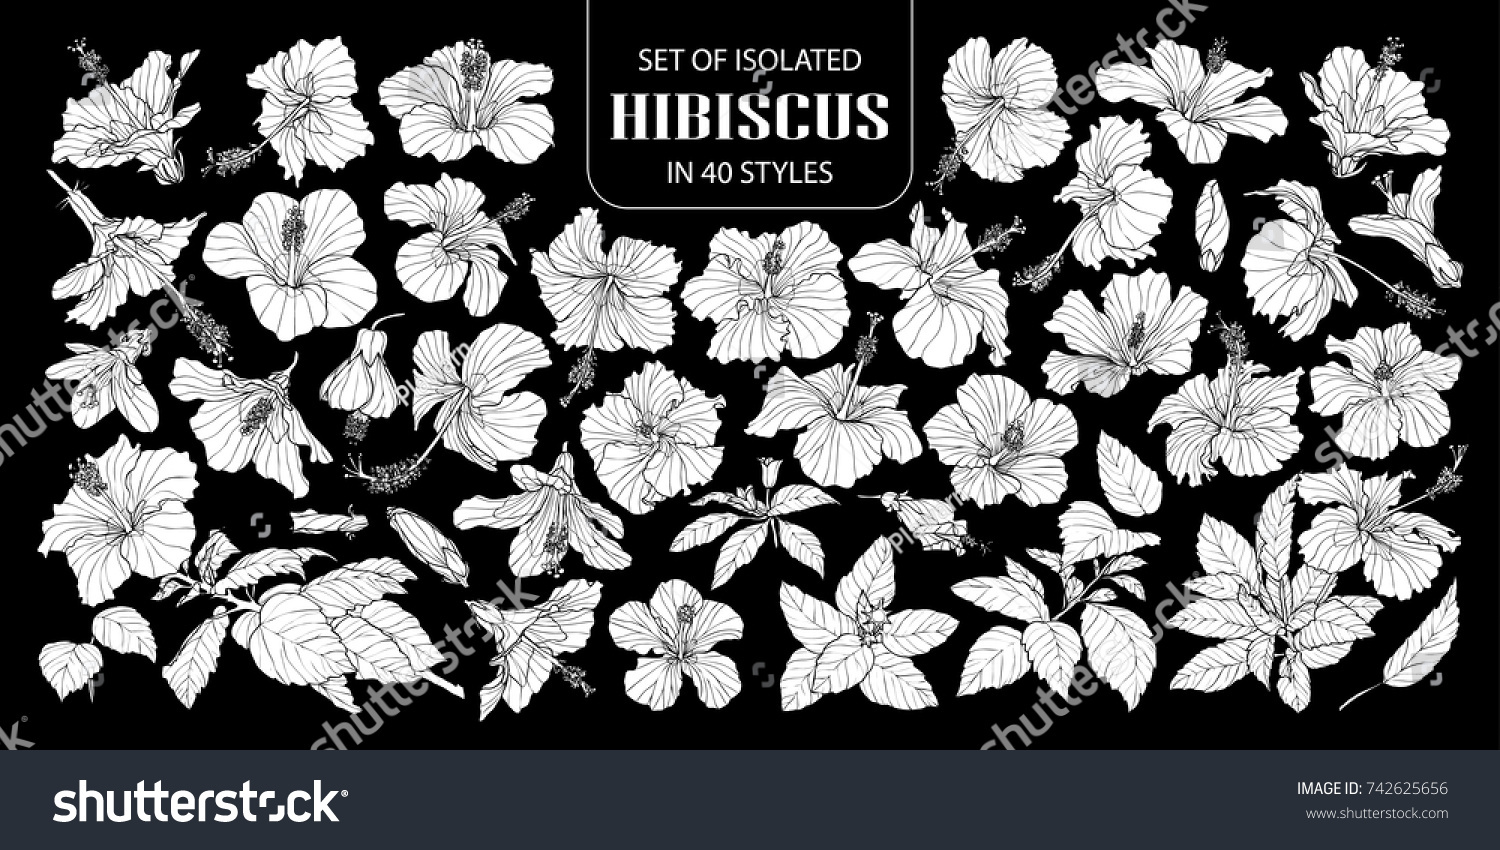 40スタイルの白いシルエットハイビスカスのセット 白い平面に手描きの花のベクターイラストで 黒い背景にアウトラインはありません のベクター画像素材 ロイヤリティフリー